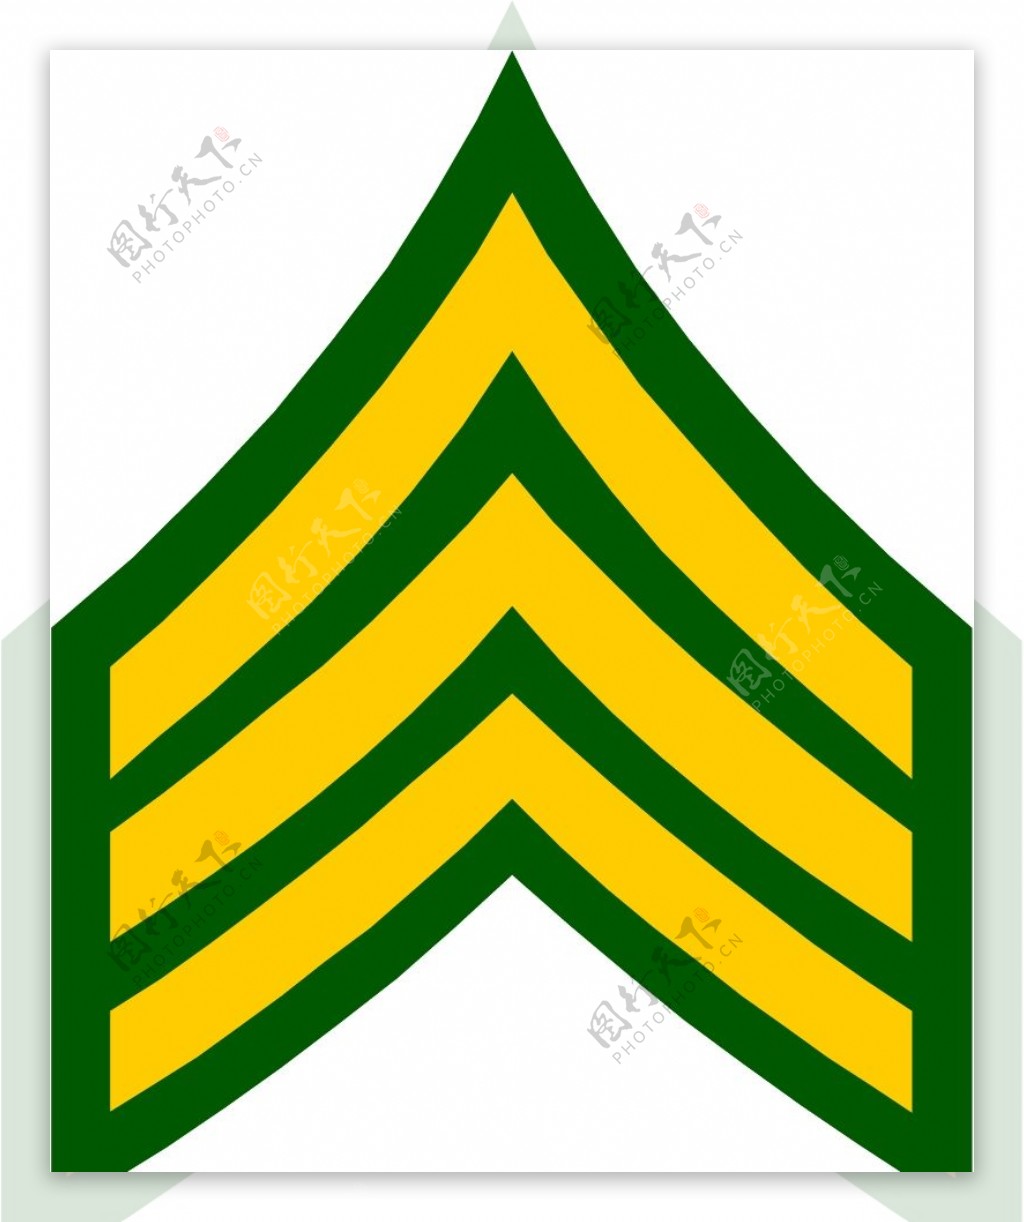 军队徽章0259